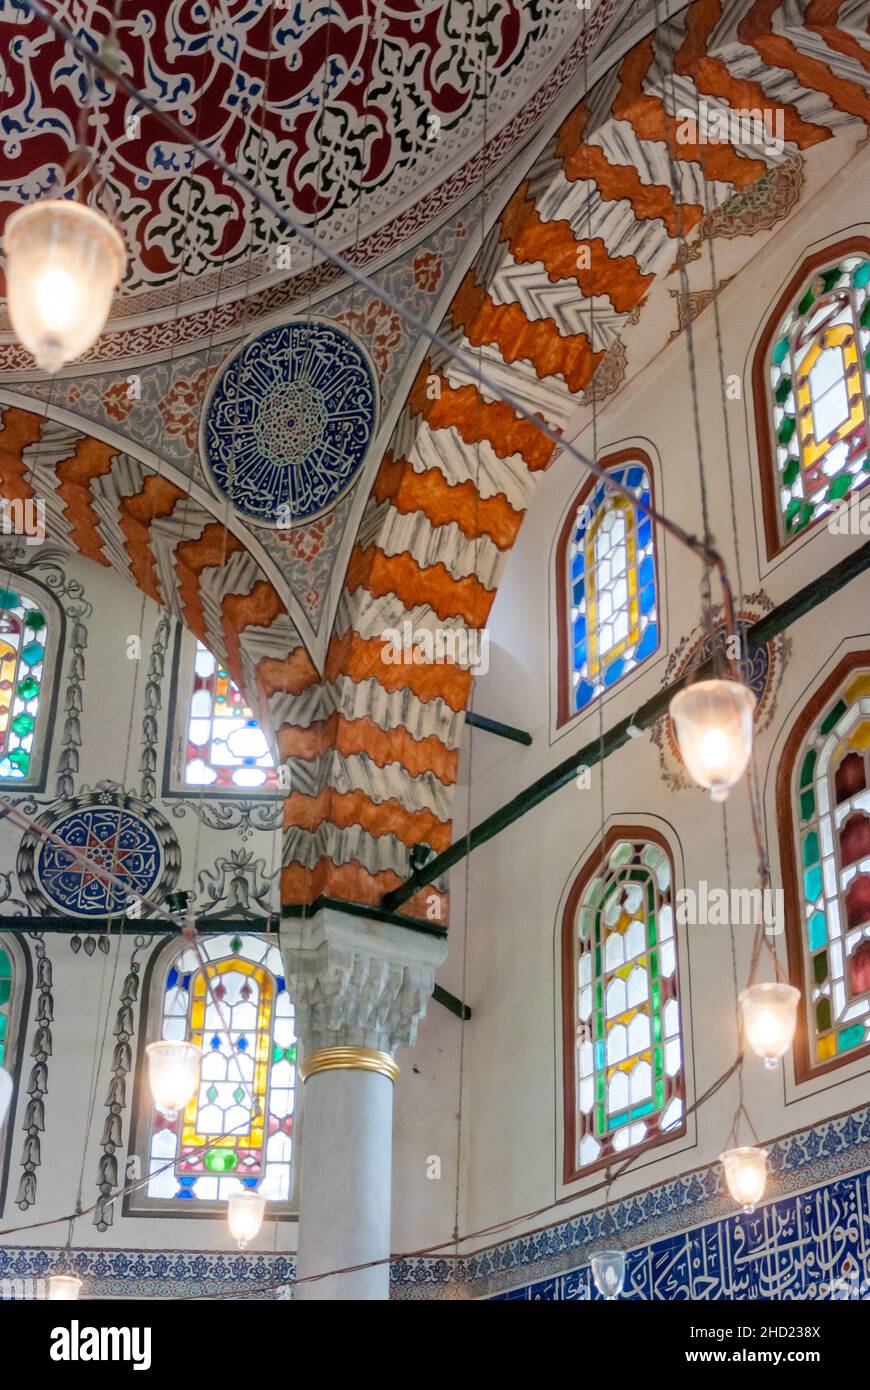 Europa, Türkei, Istanbul. Mausoleum von Sultan Selim II., in Gärten der Hagia Sophia. Stockfoto